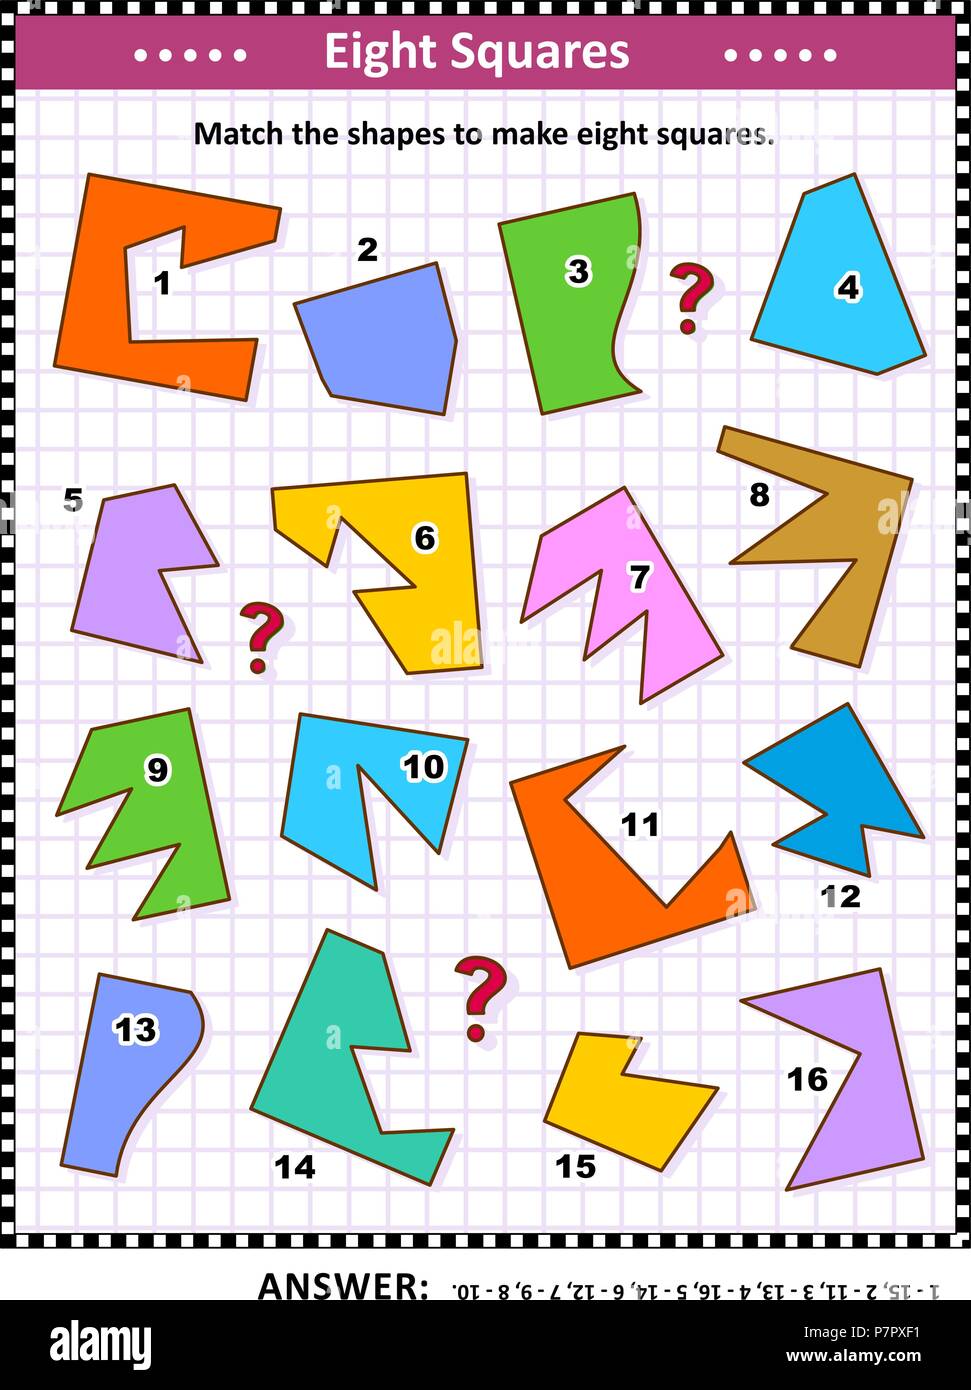 IQ e spaziale delle competenze matematiche di formazione visual puzzle: corrispondono le forme per rendere otto quadrati. Risposta inclusa. Illustrazione Vettoriale